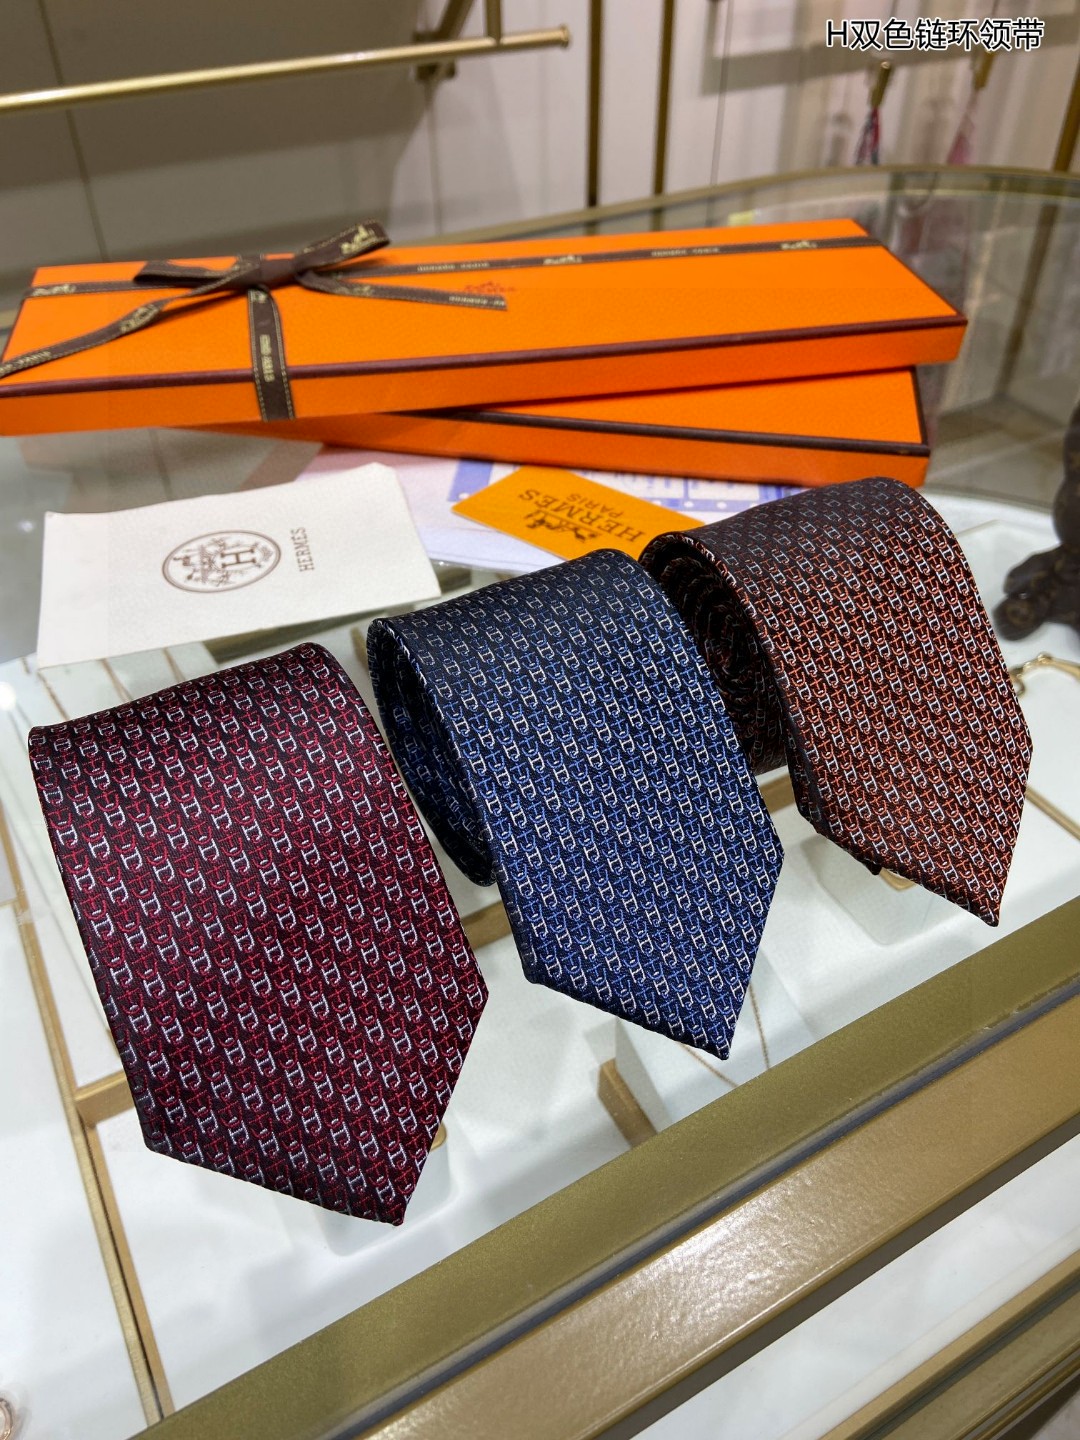 男士新款领带系列H双色链环领带稀有H家每年都有一千条不同印花的领带面世从最初的多以几何图案表现骑术活动为